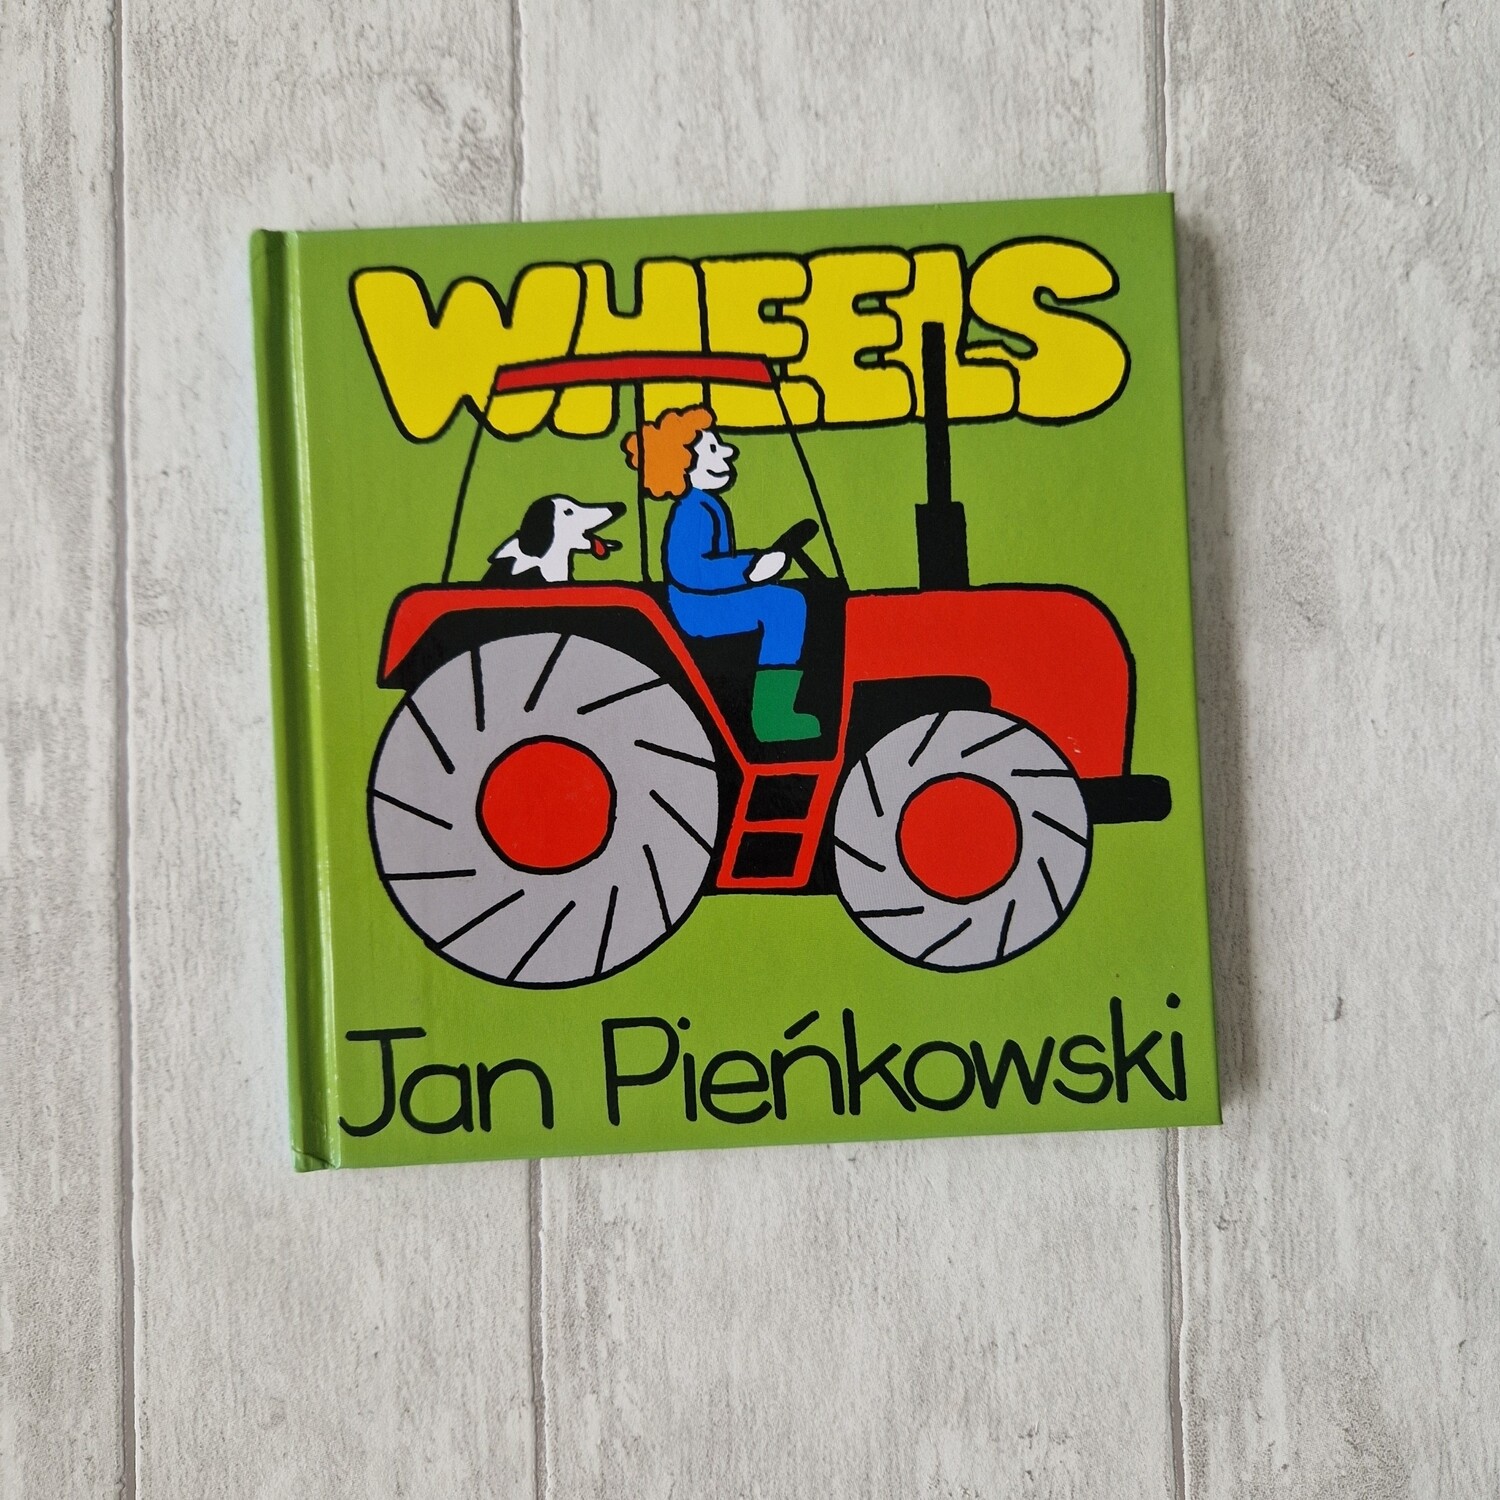 Wheels tractor / skateboard - Jan Pienkowski